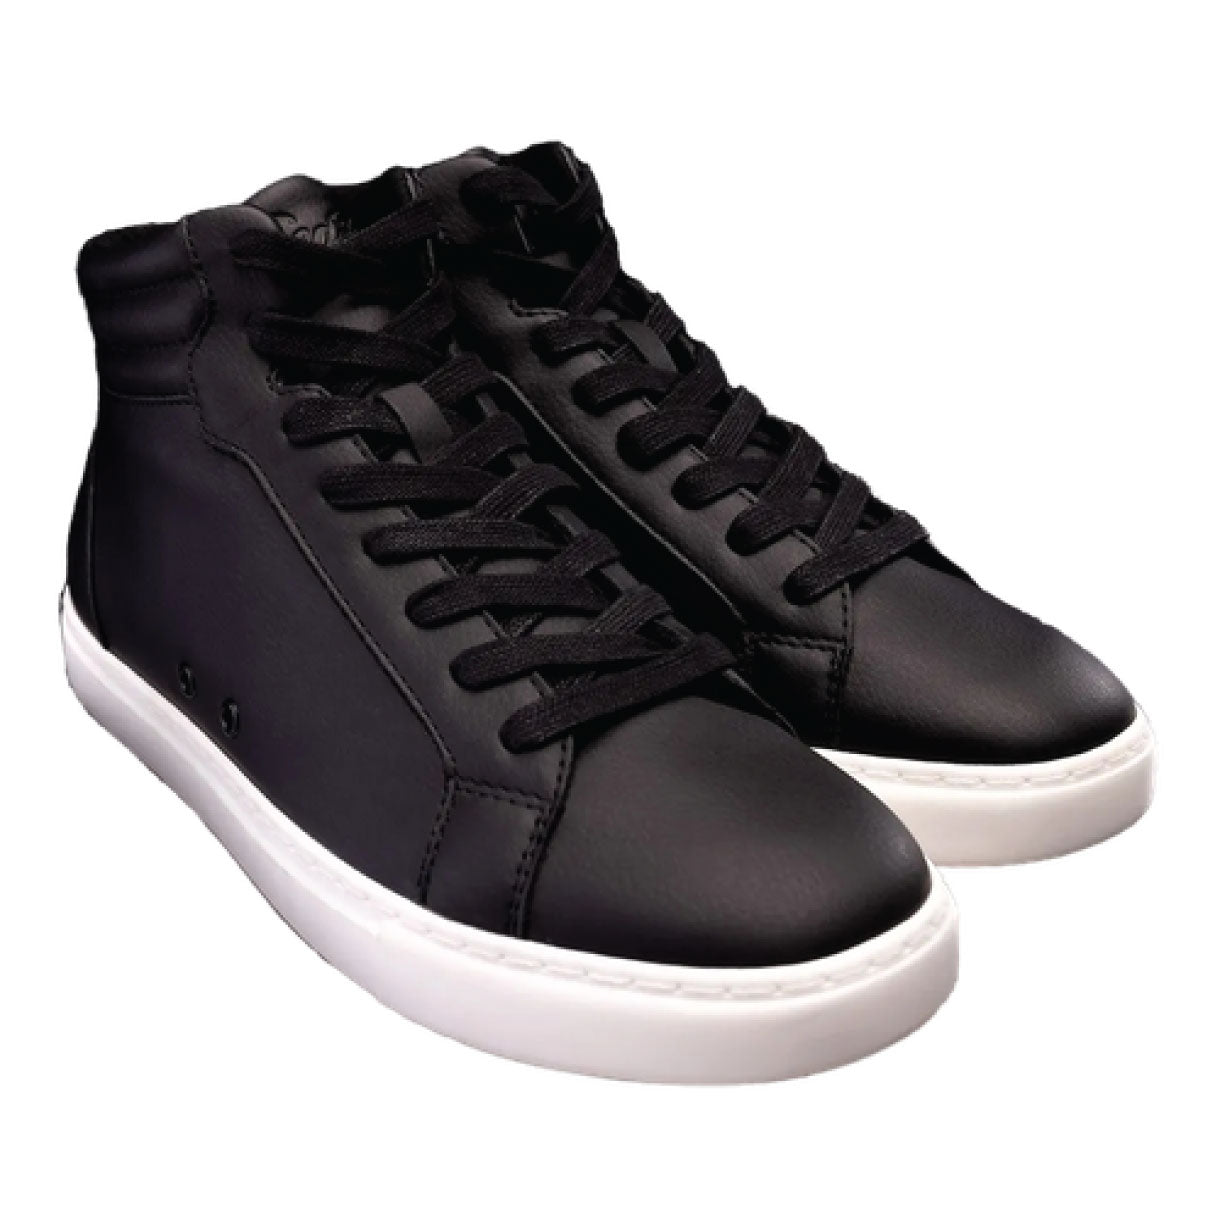 Fuego High Top Dance Sneakers en noir et blanc